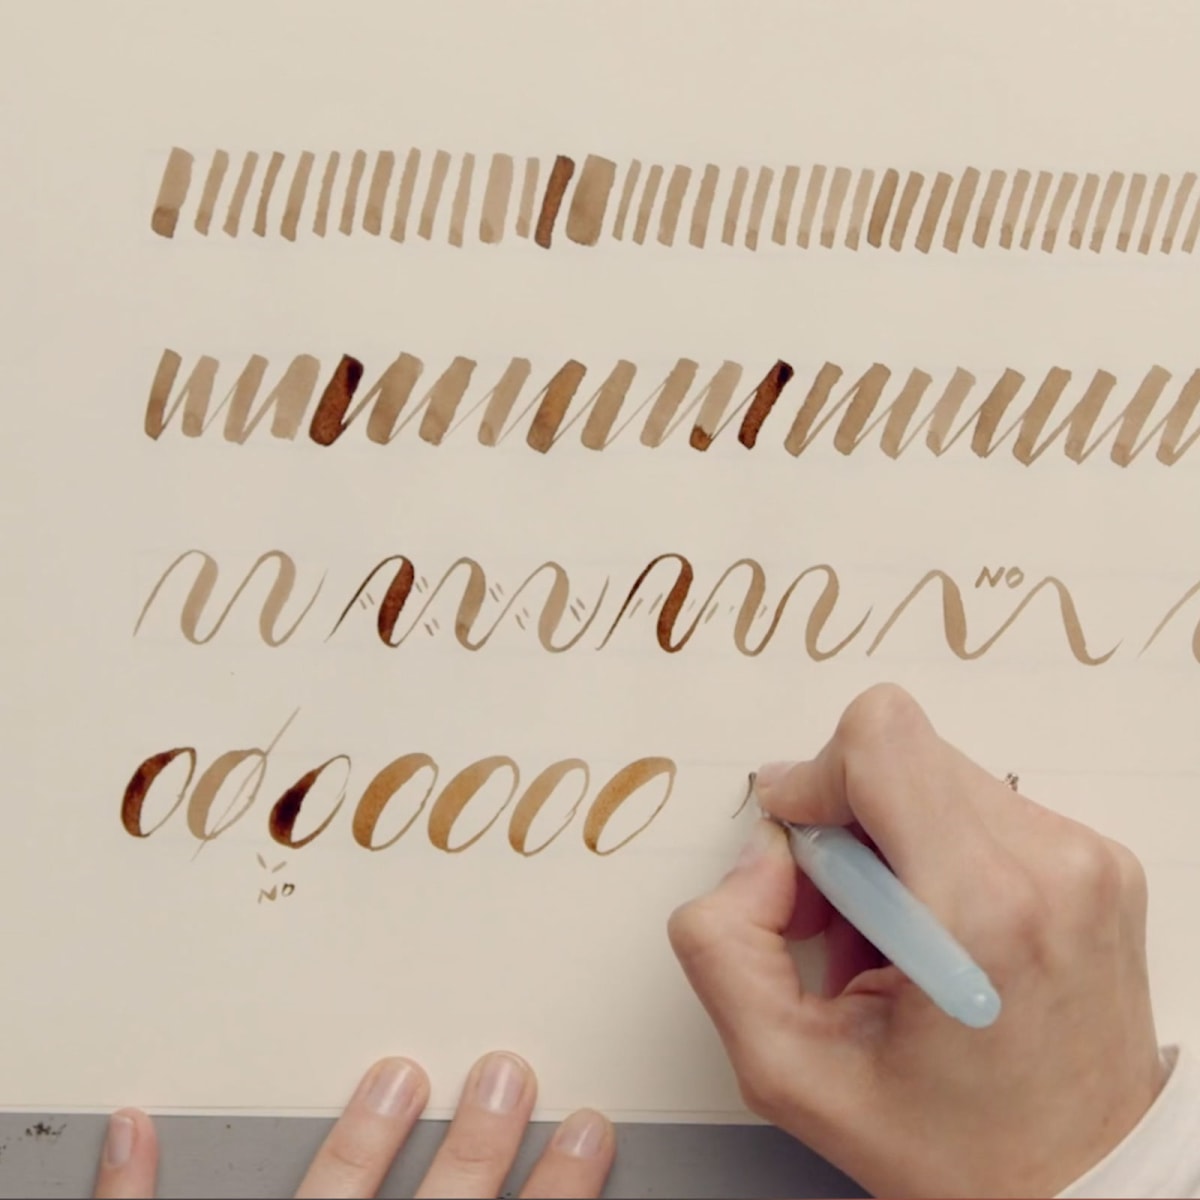 El Uni Pin Brush es la herramienta gráfica perfecta para caligrafía, letras  y bocetos! ¡Probalo y mostranos tus…